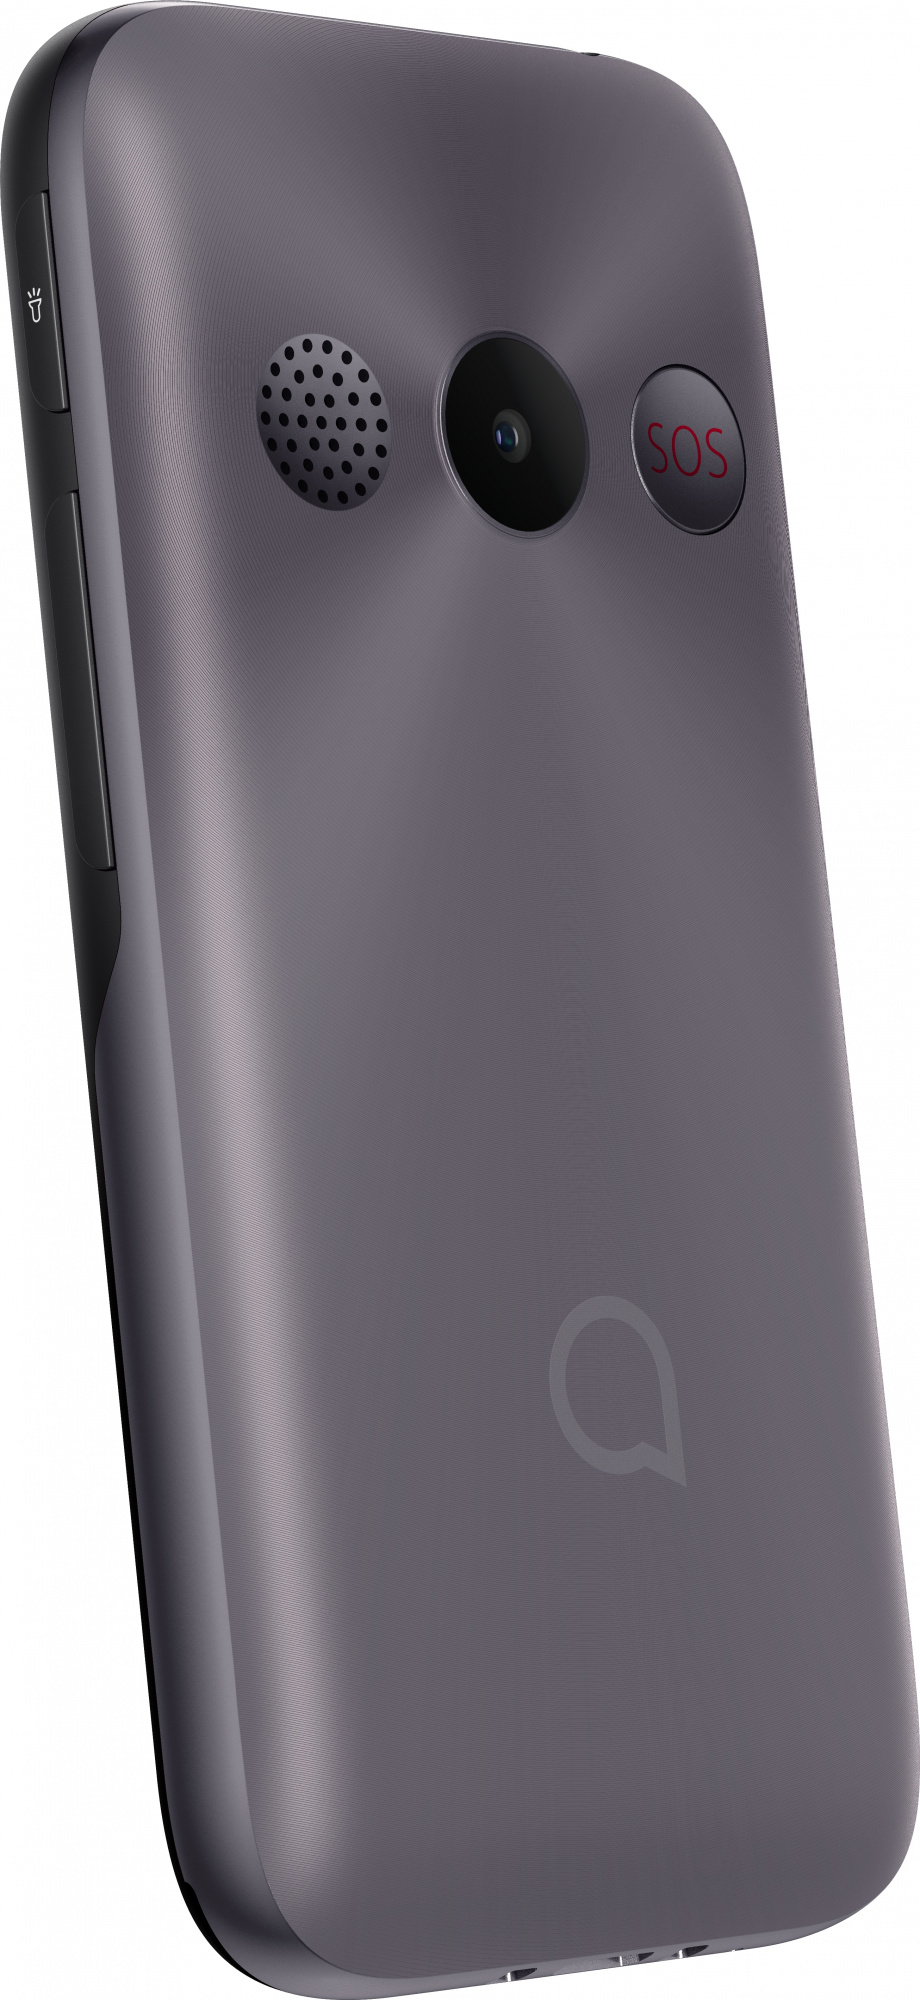 Мобильный телефон Alcatel 2020X, серый 